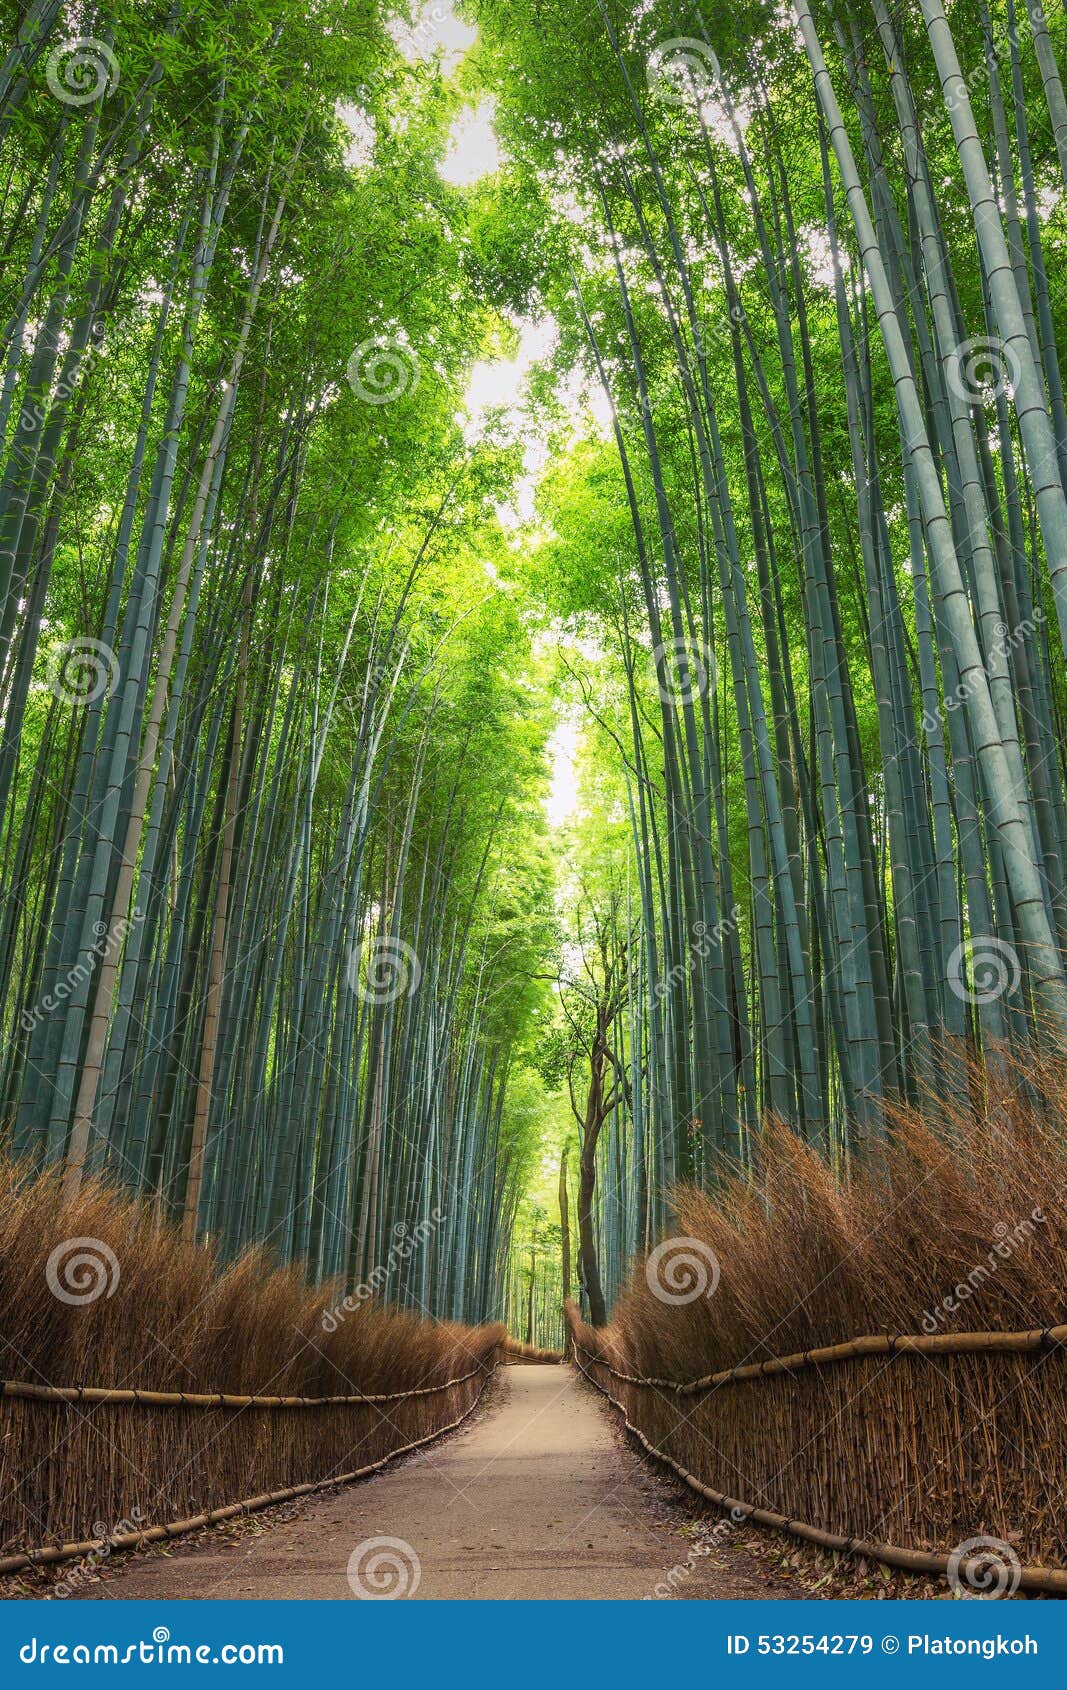 bamboo forest in kyoto, arashiyama, japan